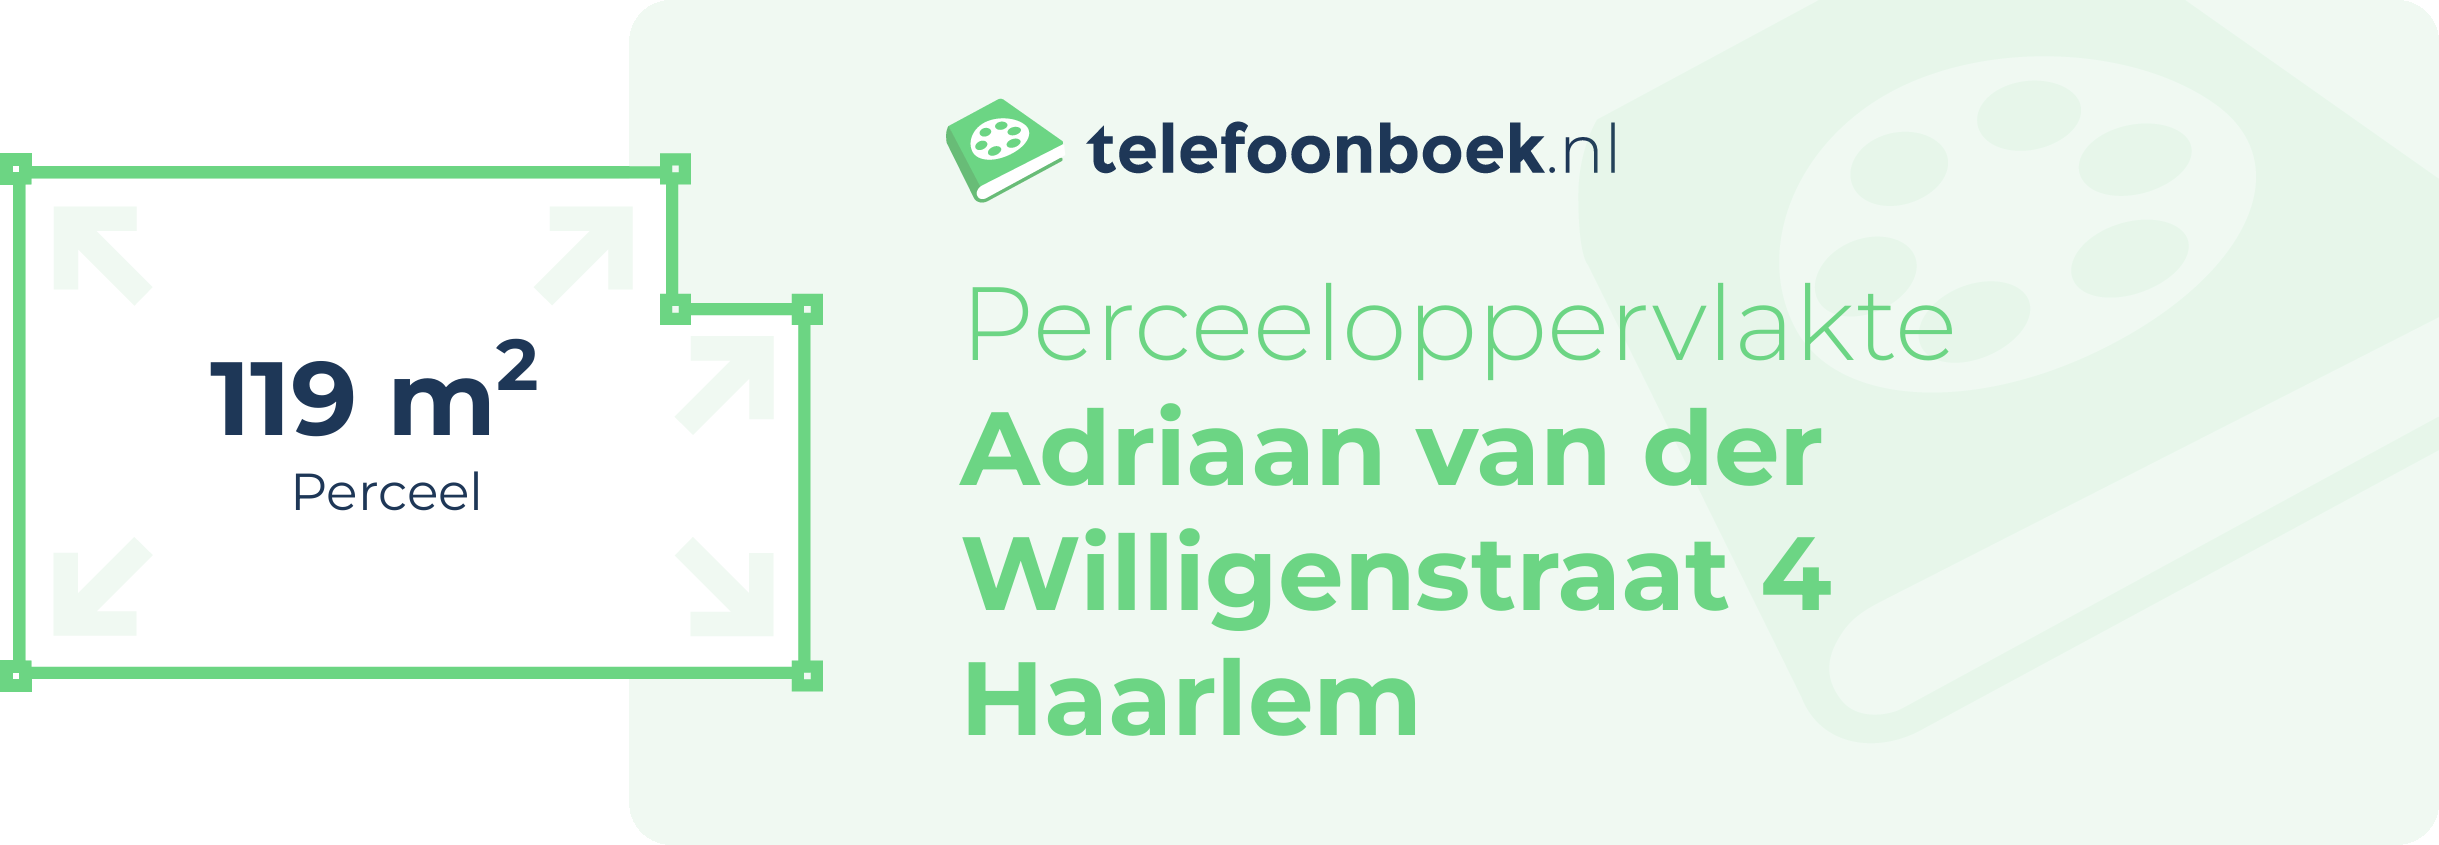 Perceeloppervlakte Adriaan Van Der Willigenstraat 4 Haarlem